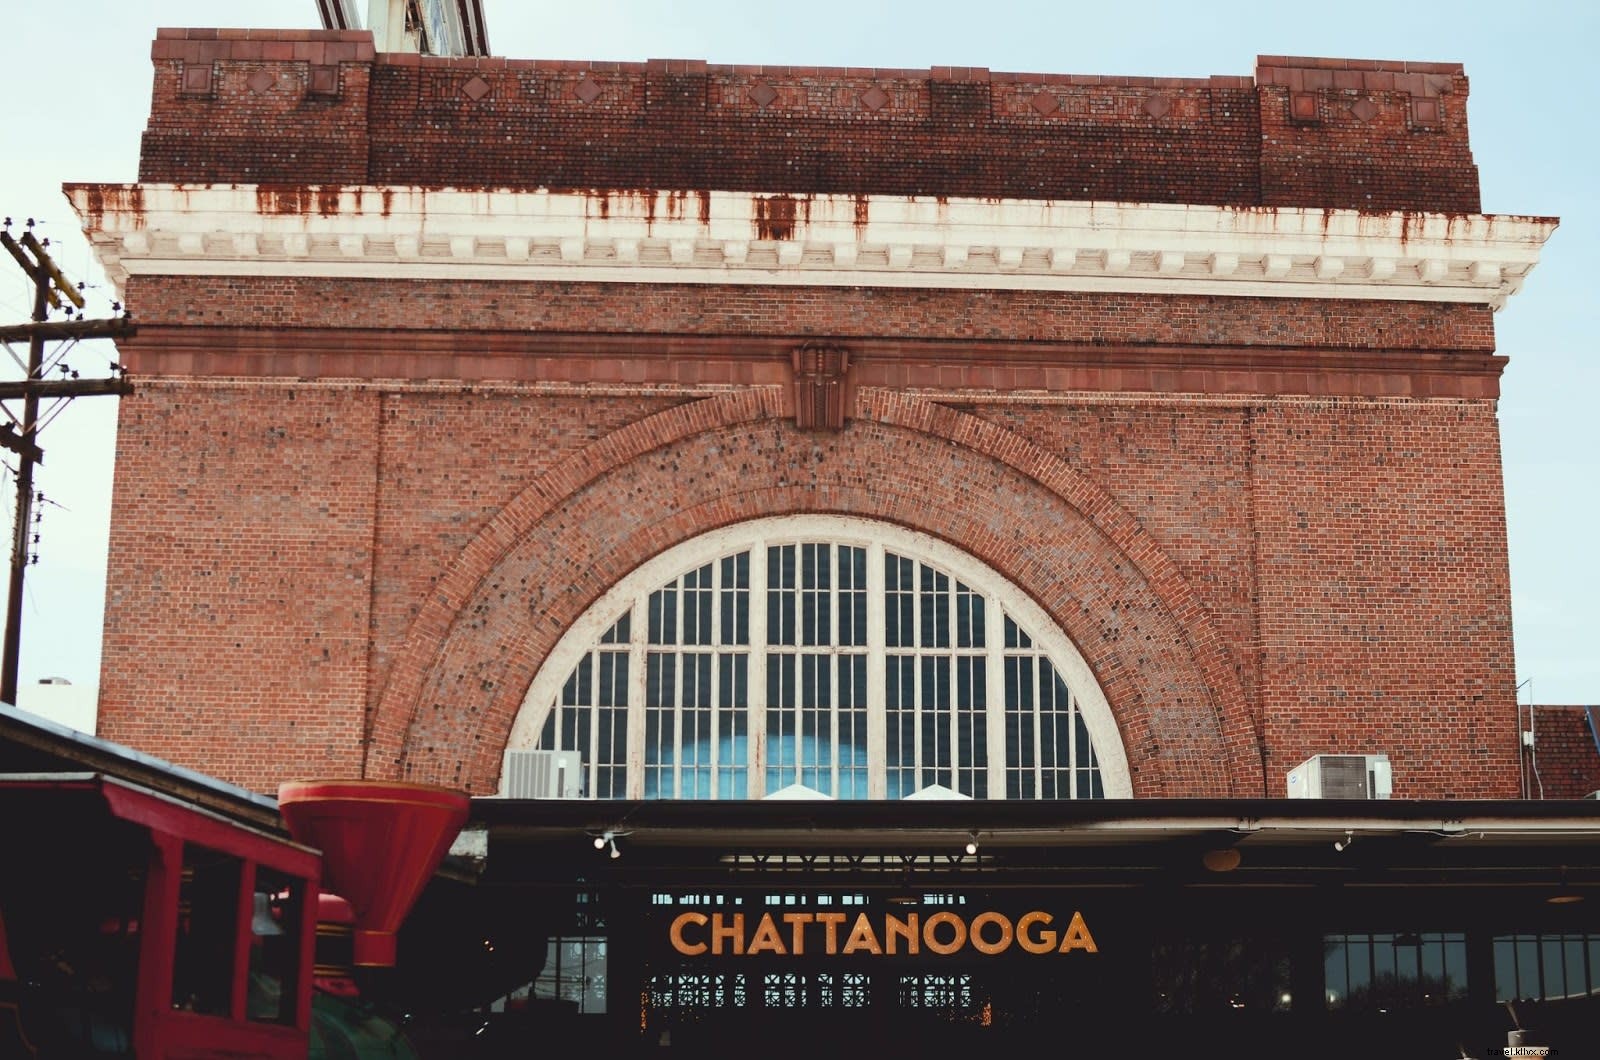 7 aventuras imperdíveis em Chattanooga de acordo com 7 locais 